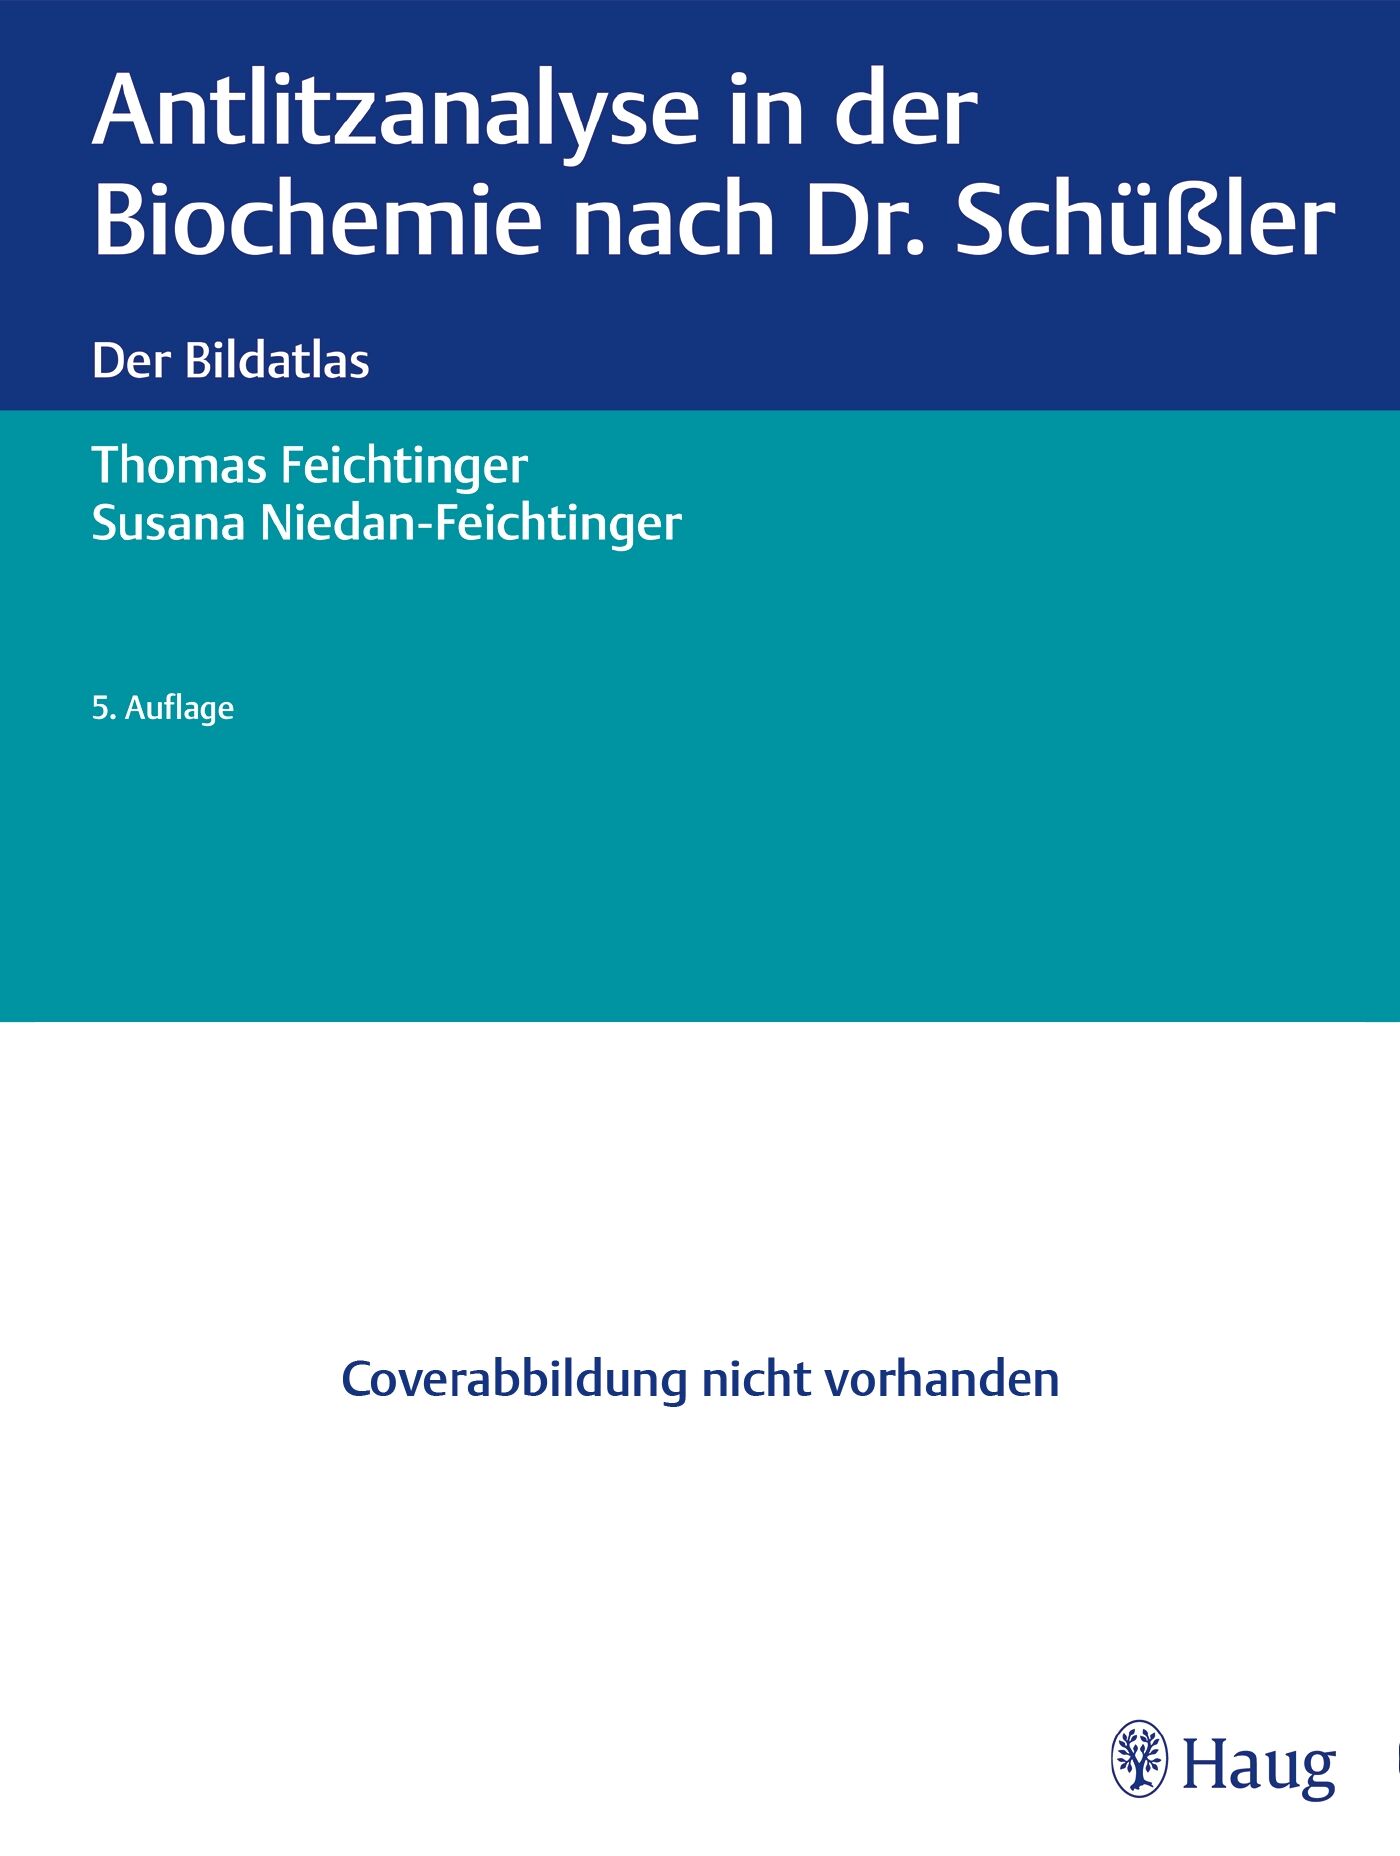 Antlitzanalyse in der Biochemie nach Dr. Schüßler, 9783132419155